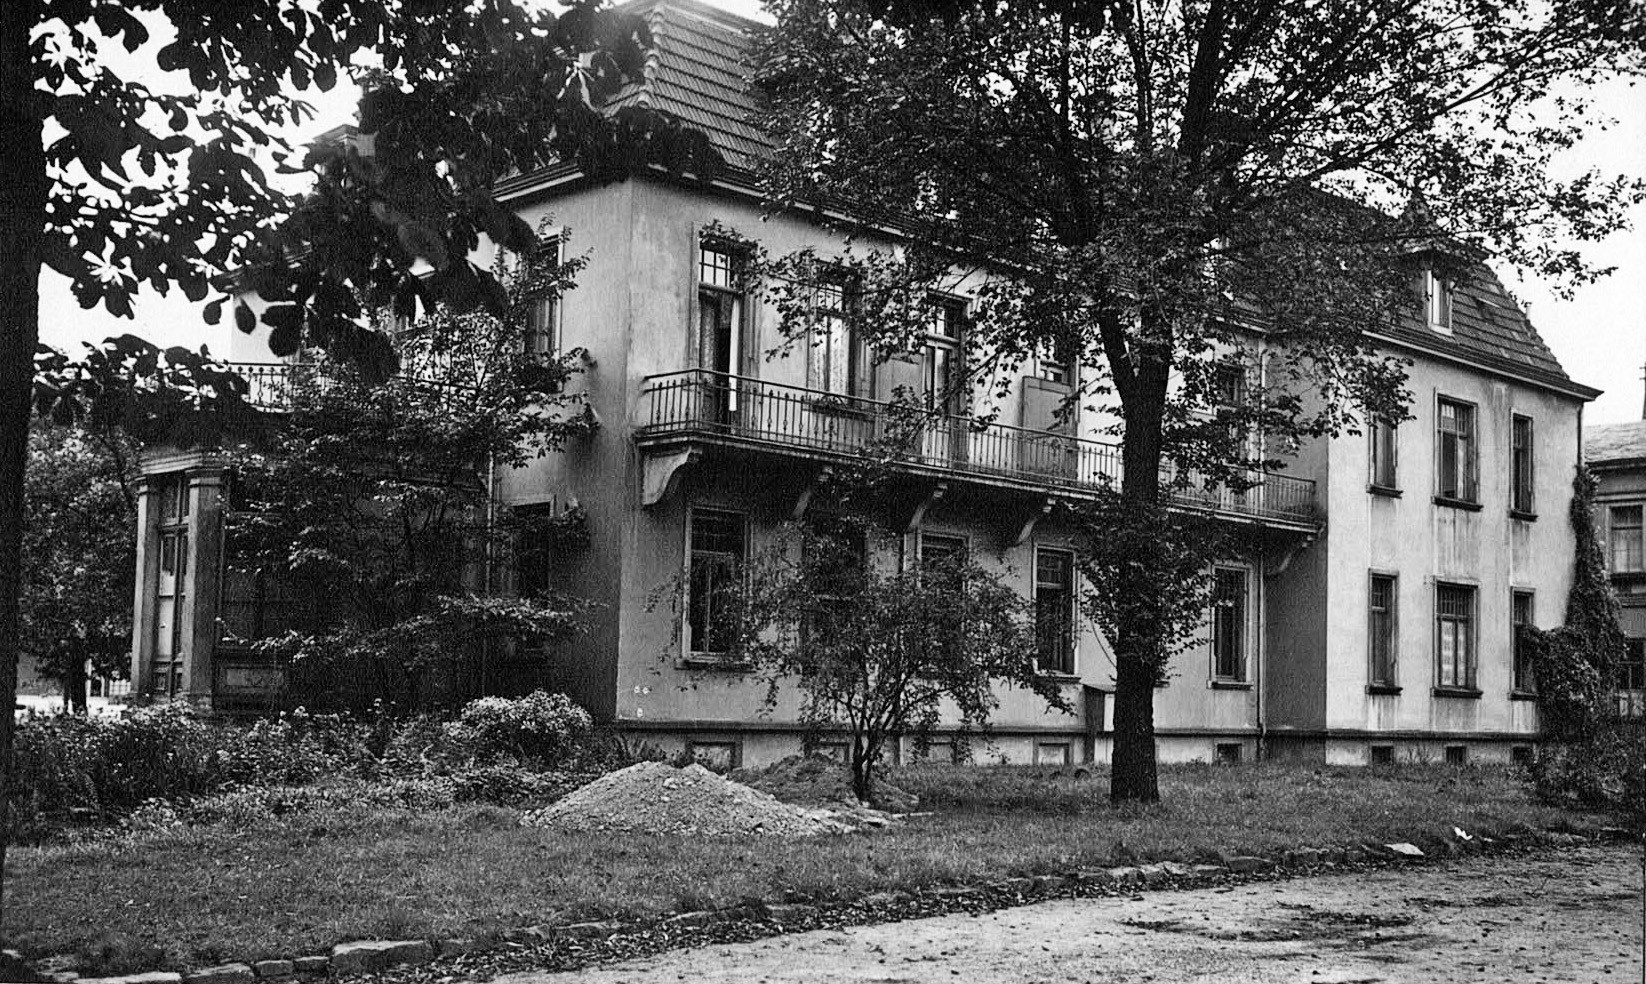 Foto-Sammlung Adolf Krapp, Ordner 14: Kur-Hotel, 1930 (Museumsgesellschaft Bad Dürkheim e.V. CC BY-NC-SA)